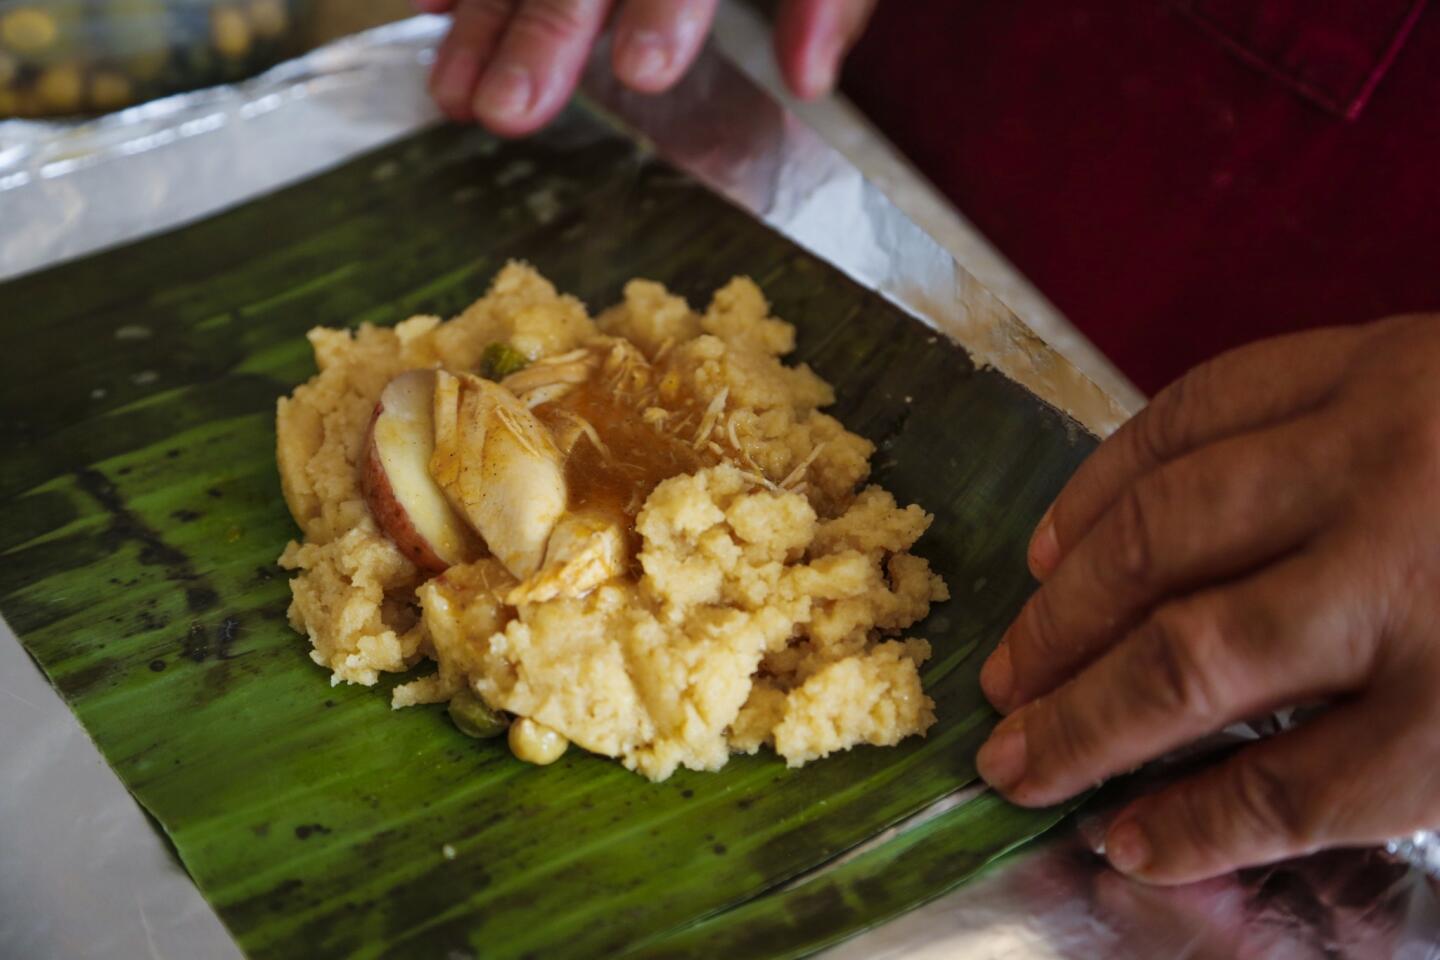 Preparing Salvadoran tamales